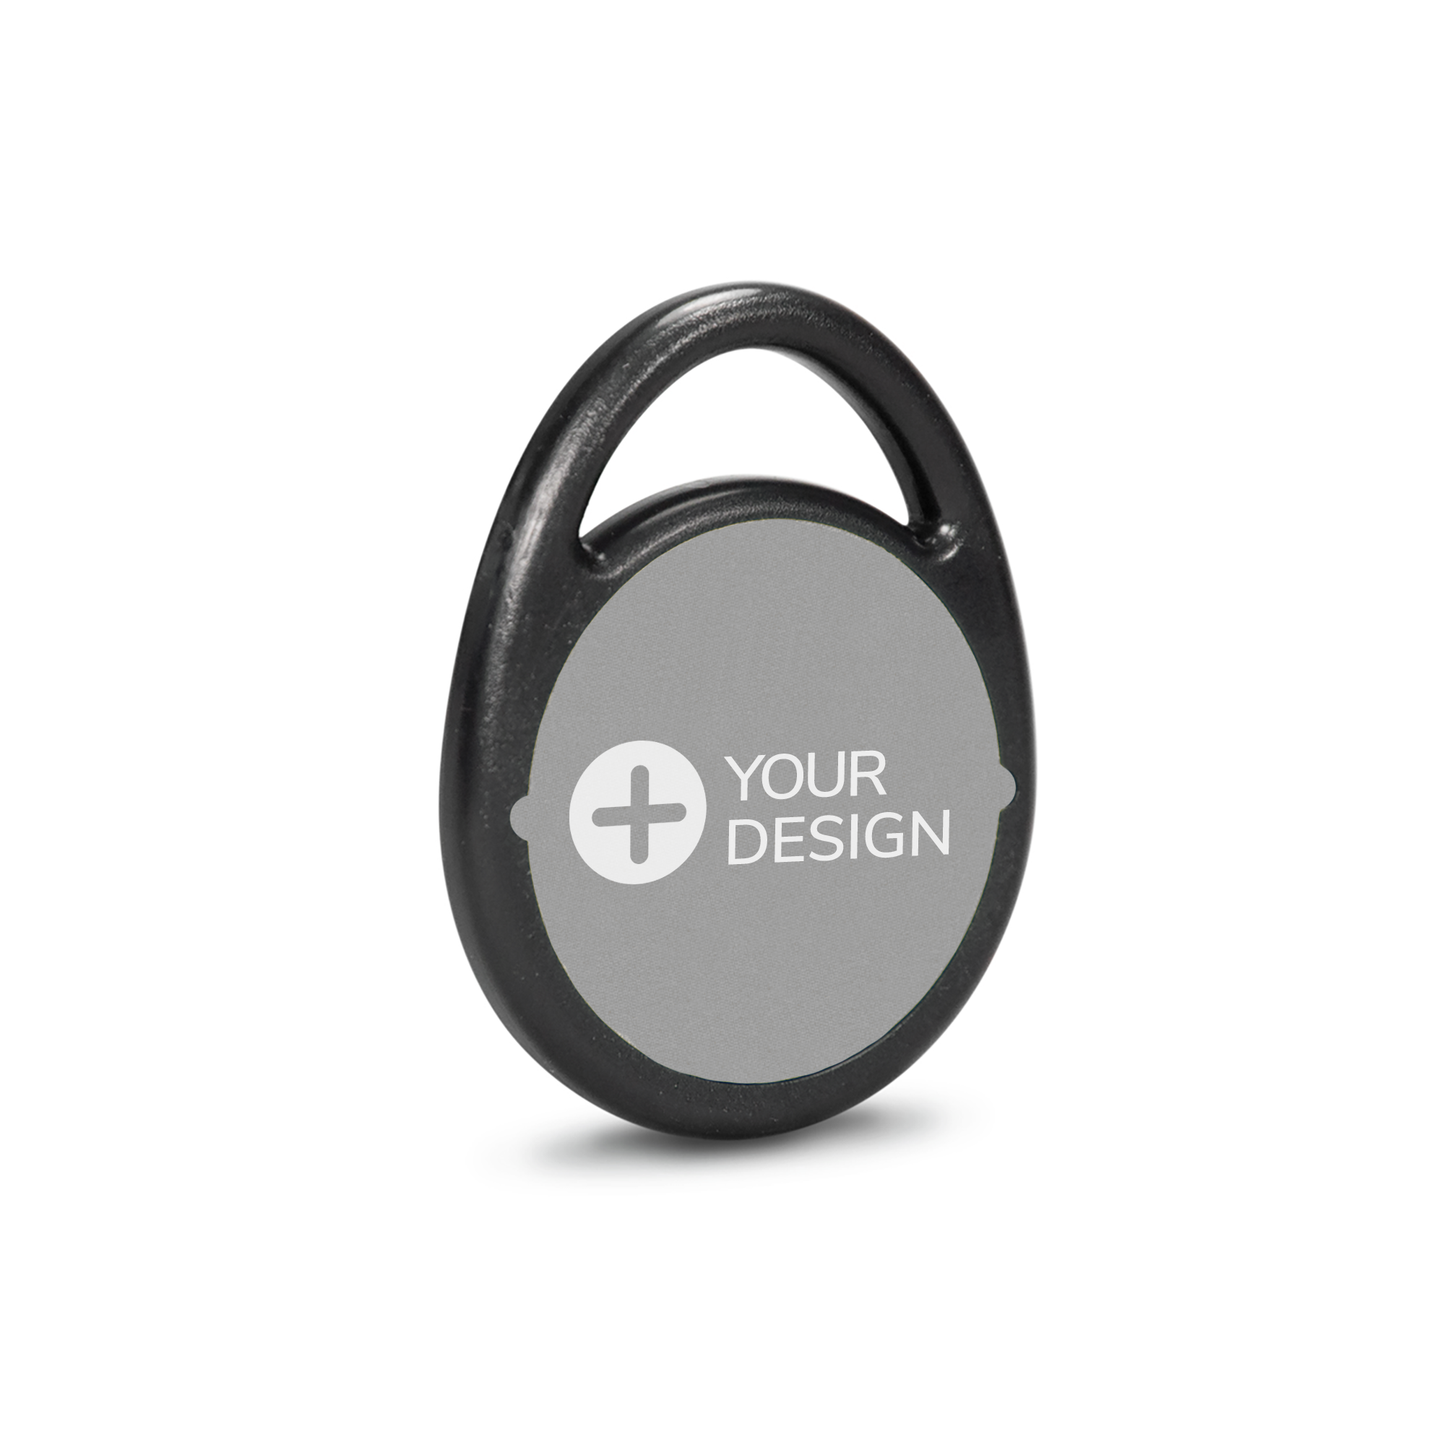 Branded NFC Tag to open smart locks. | Personalisierte NFC-Tag zum Öffnen von Smart Locks.